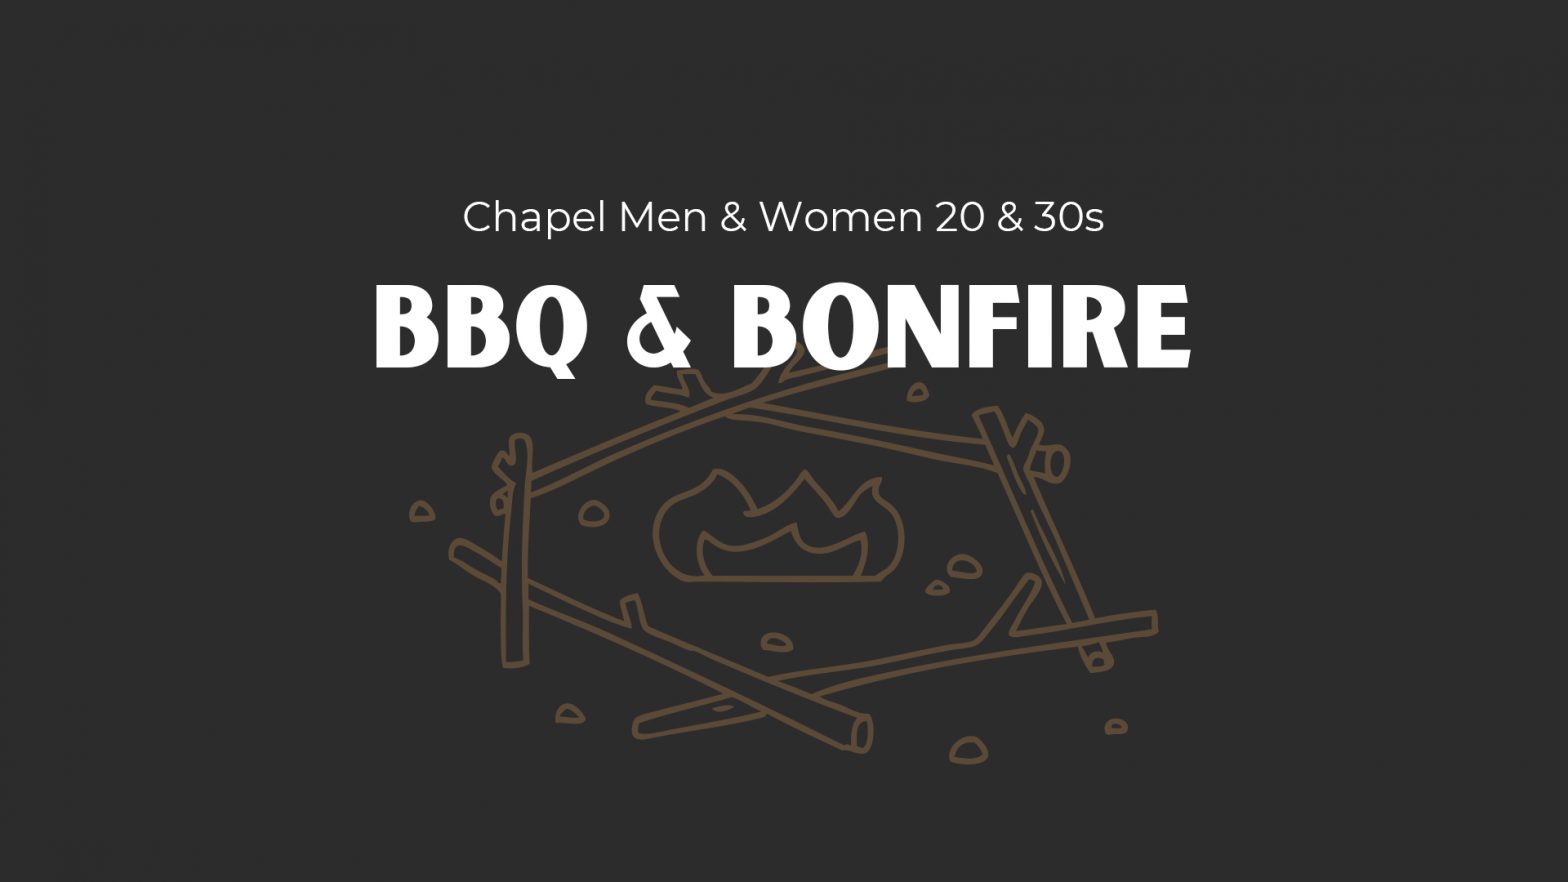 BBQ & Bonfire image